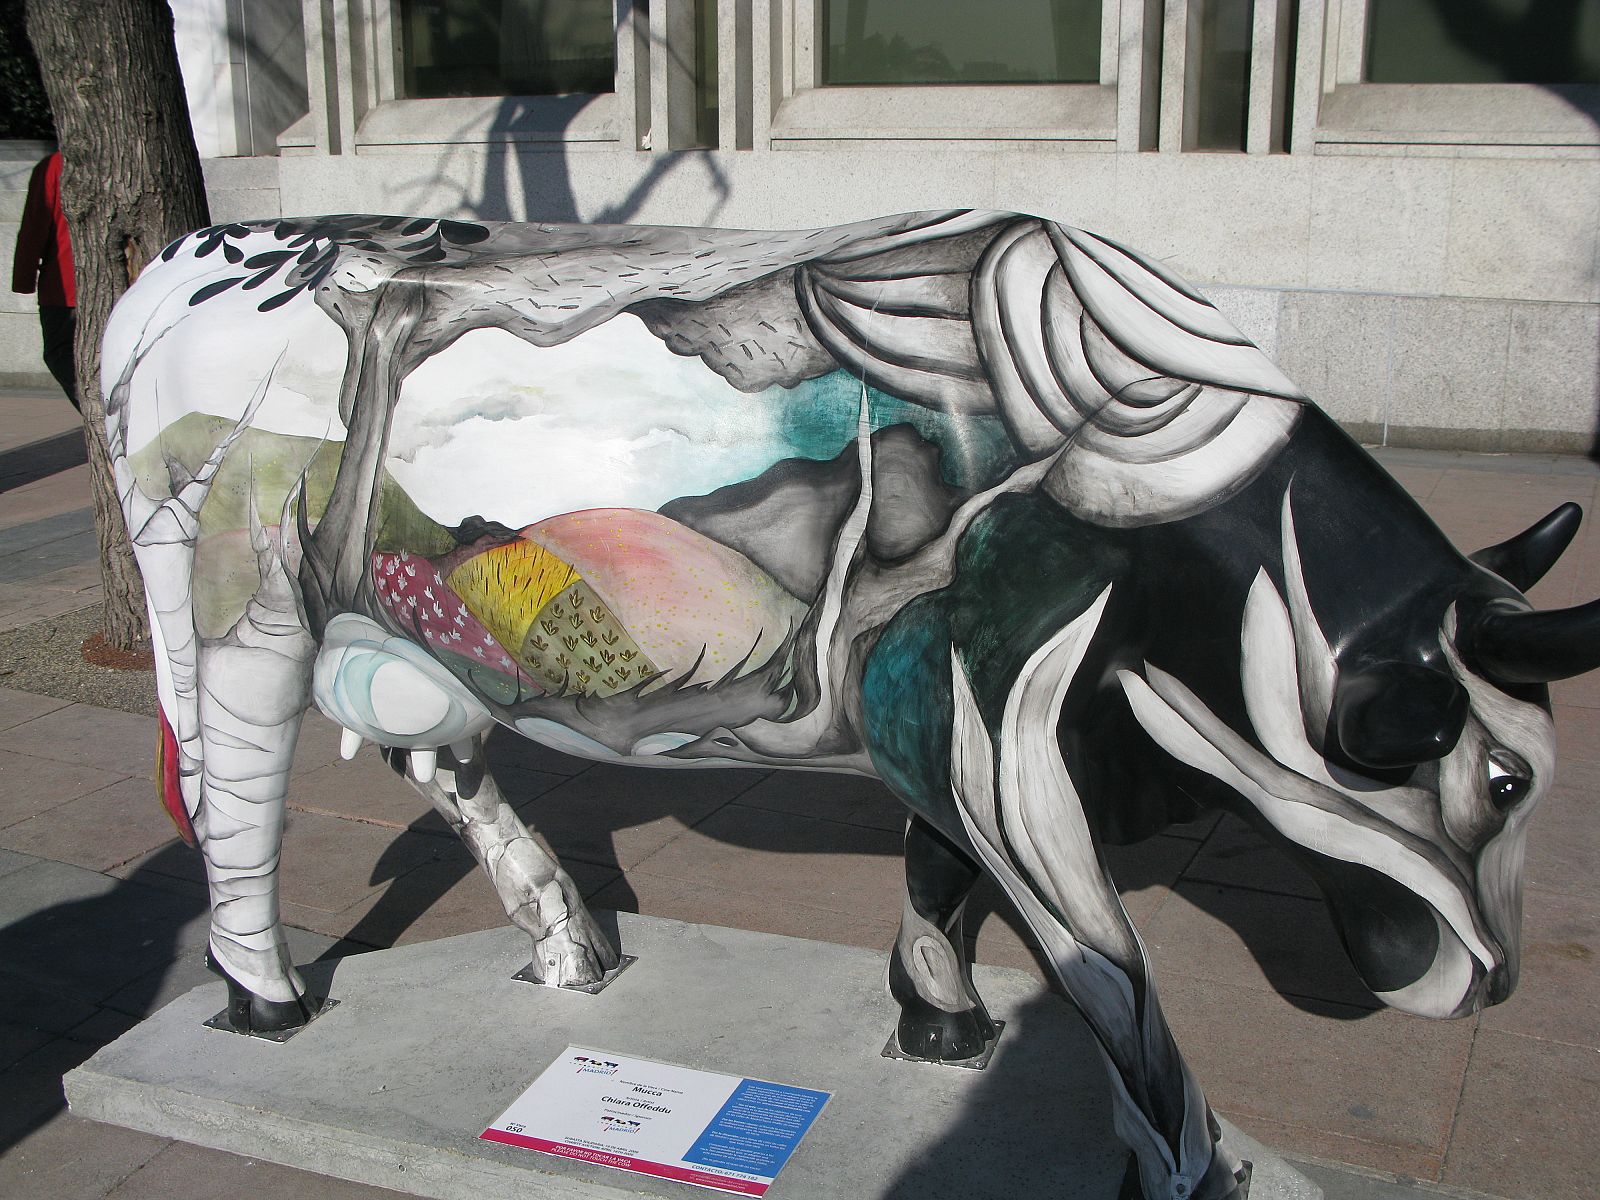 La vaca "mucca" es una de las piezas de la exposición "Cow Parade" (19/01/09)